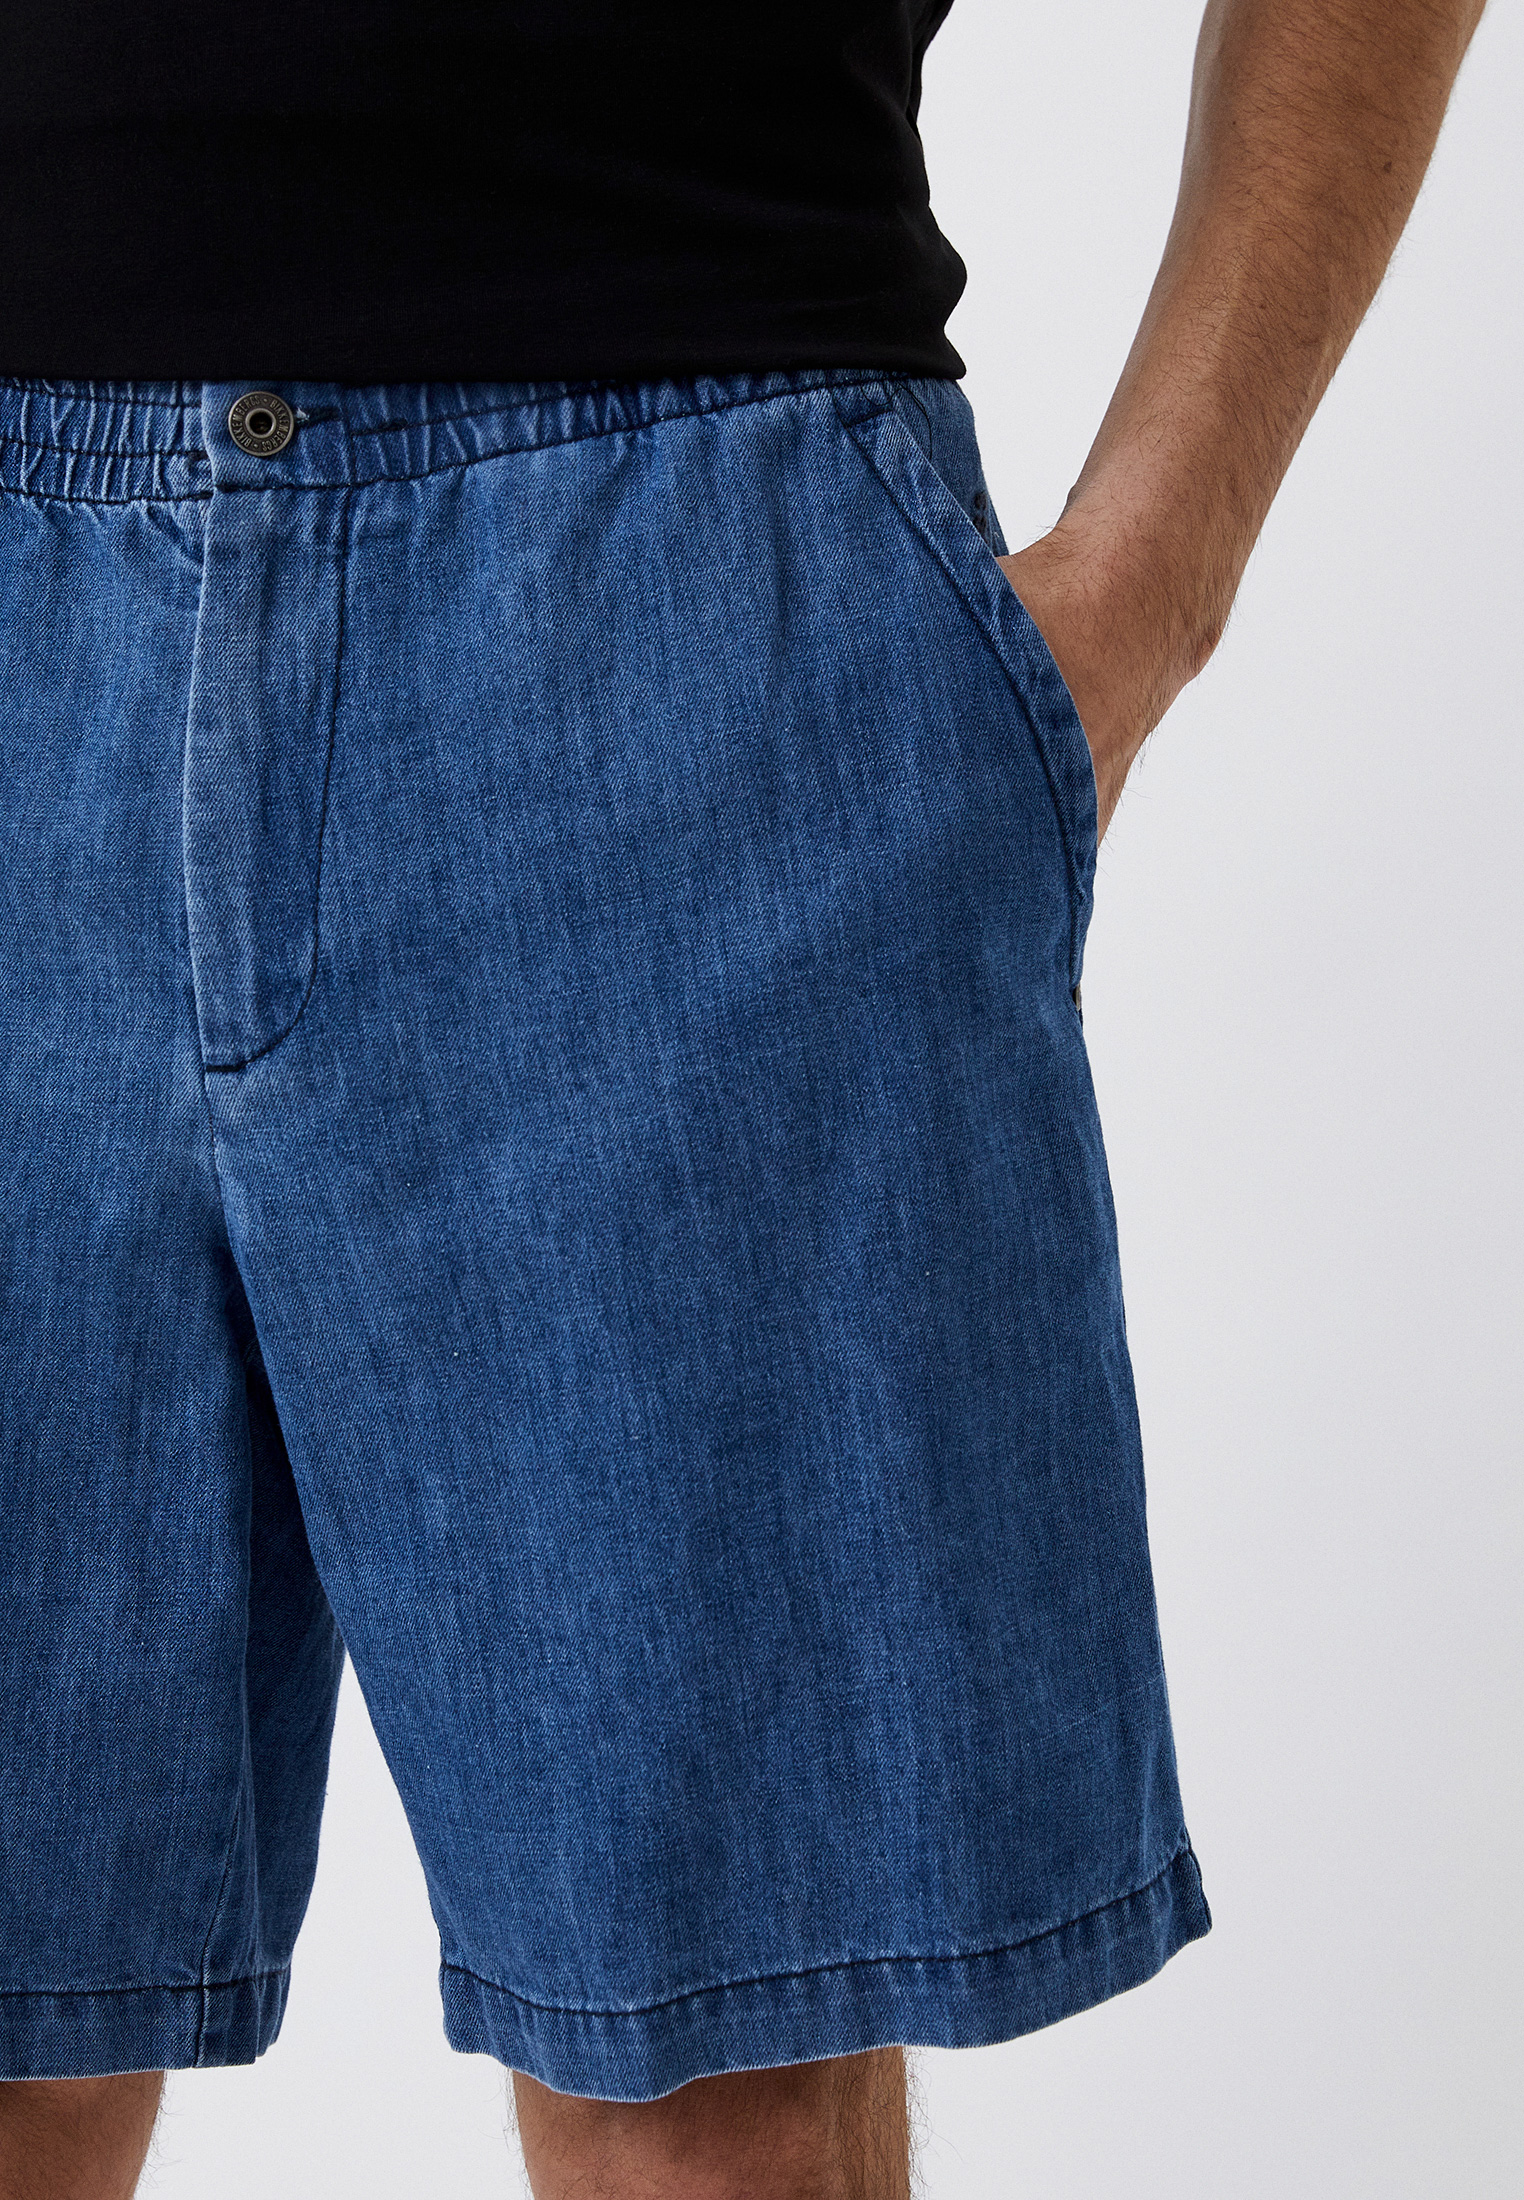 Мужские джинсовые шорты Bikkembergs (Биккембергс) C O 015 01 T 093A: изображение 4